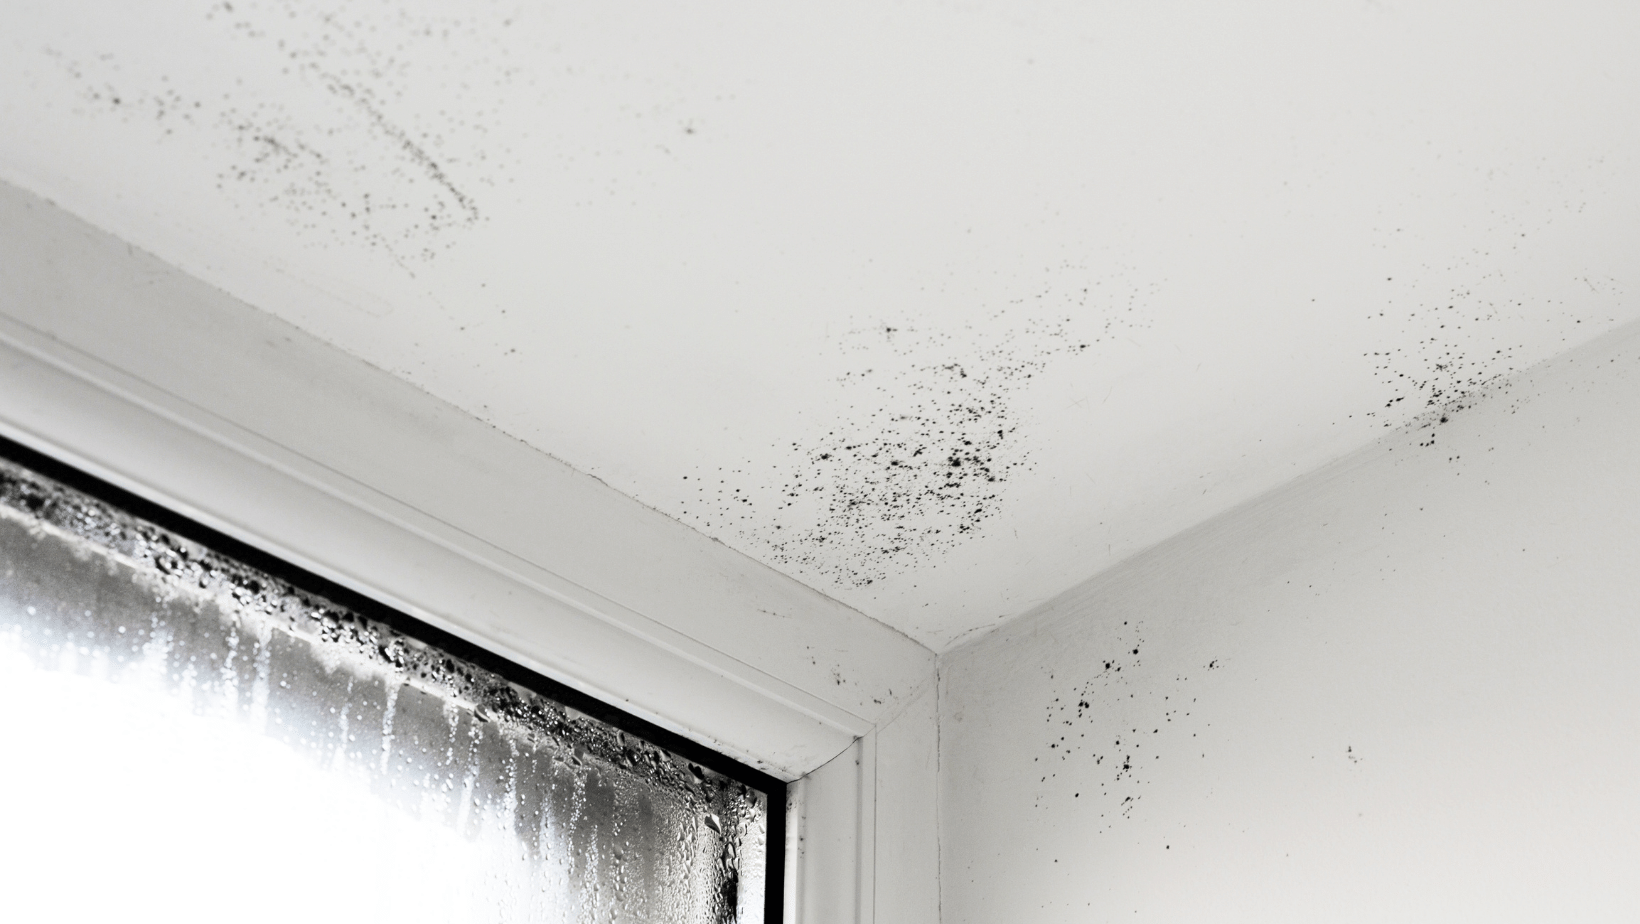 Manchas de humedad en las paredes: Causas, soluciones y cómo